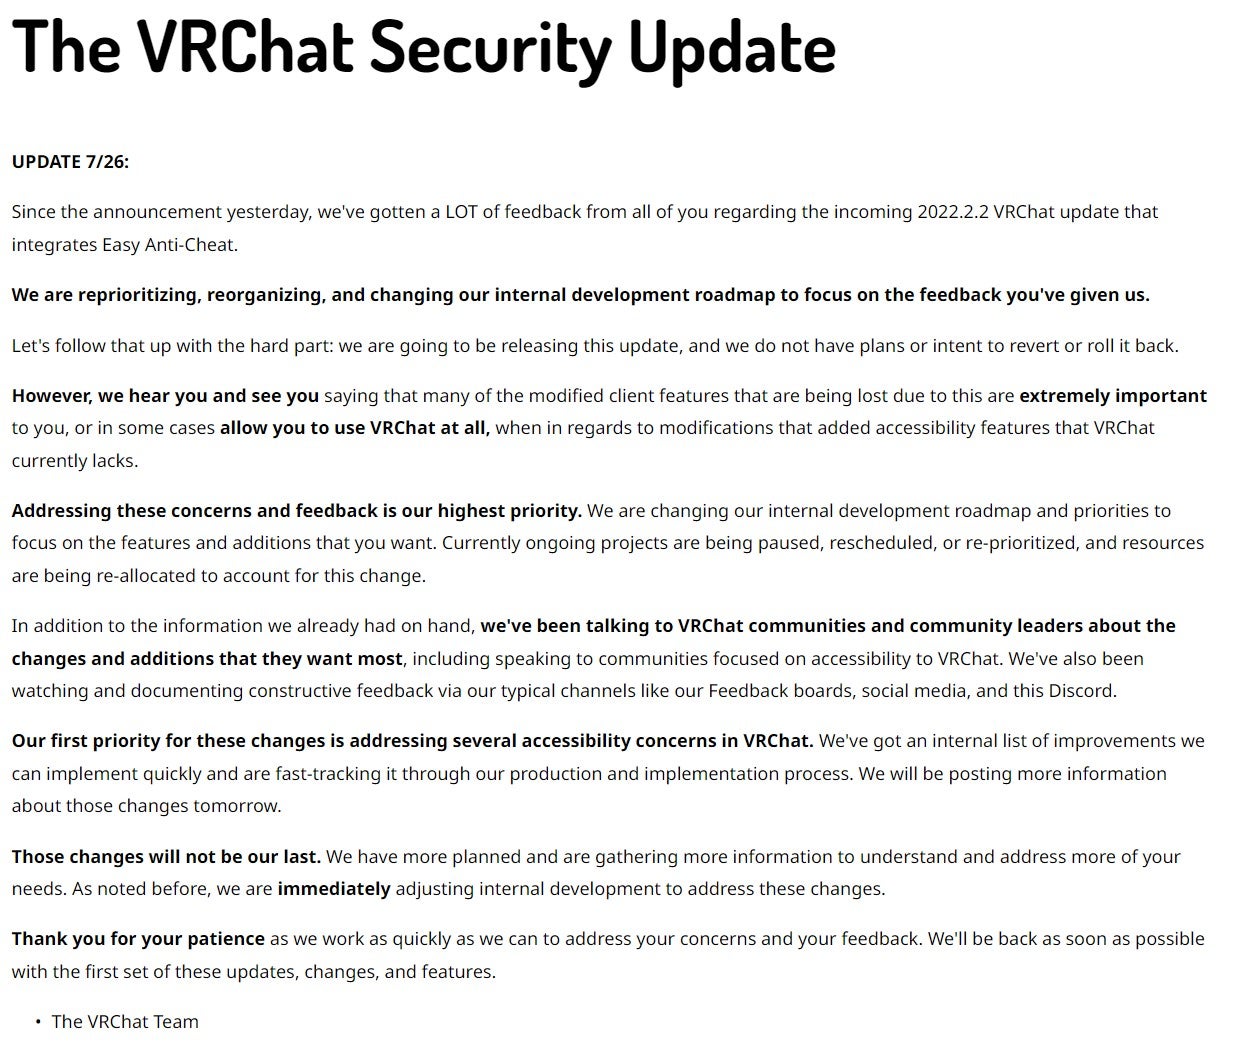 La mise à jour du blog de VRChat annonçant la mise à jour Easy Anti-Cheat.